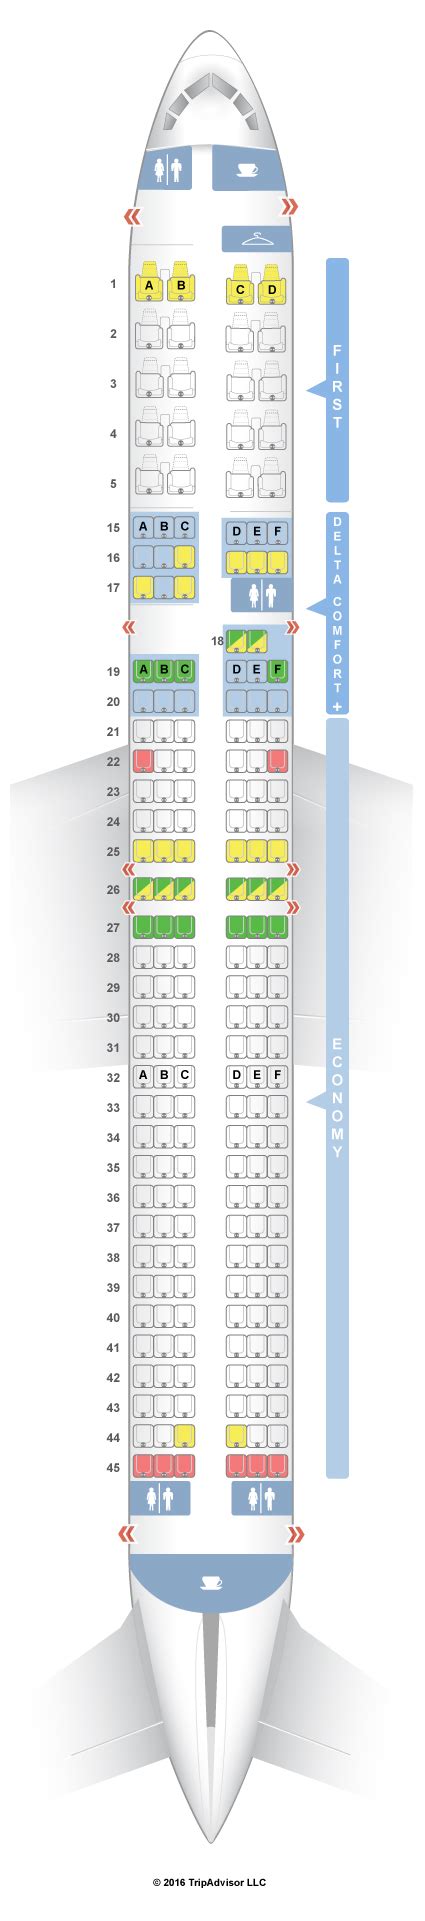 Seatguru Seat Map Delta Boeing 757 200 75d